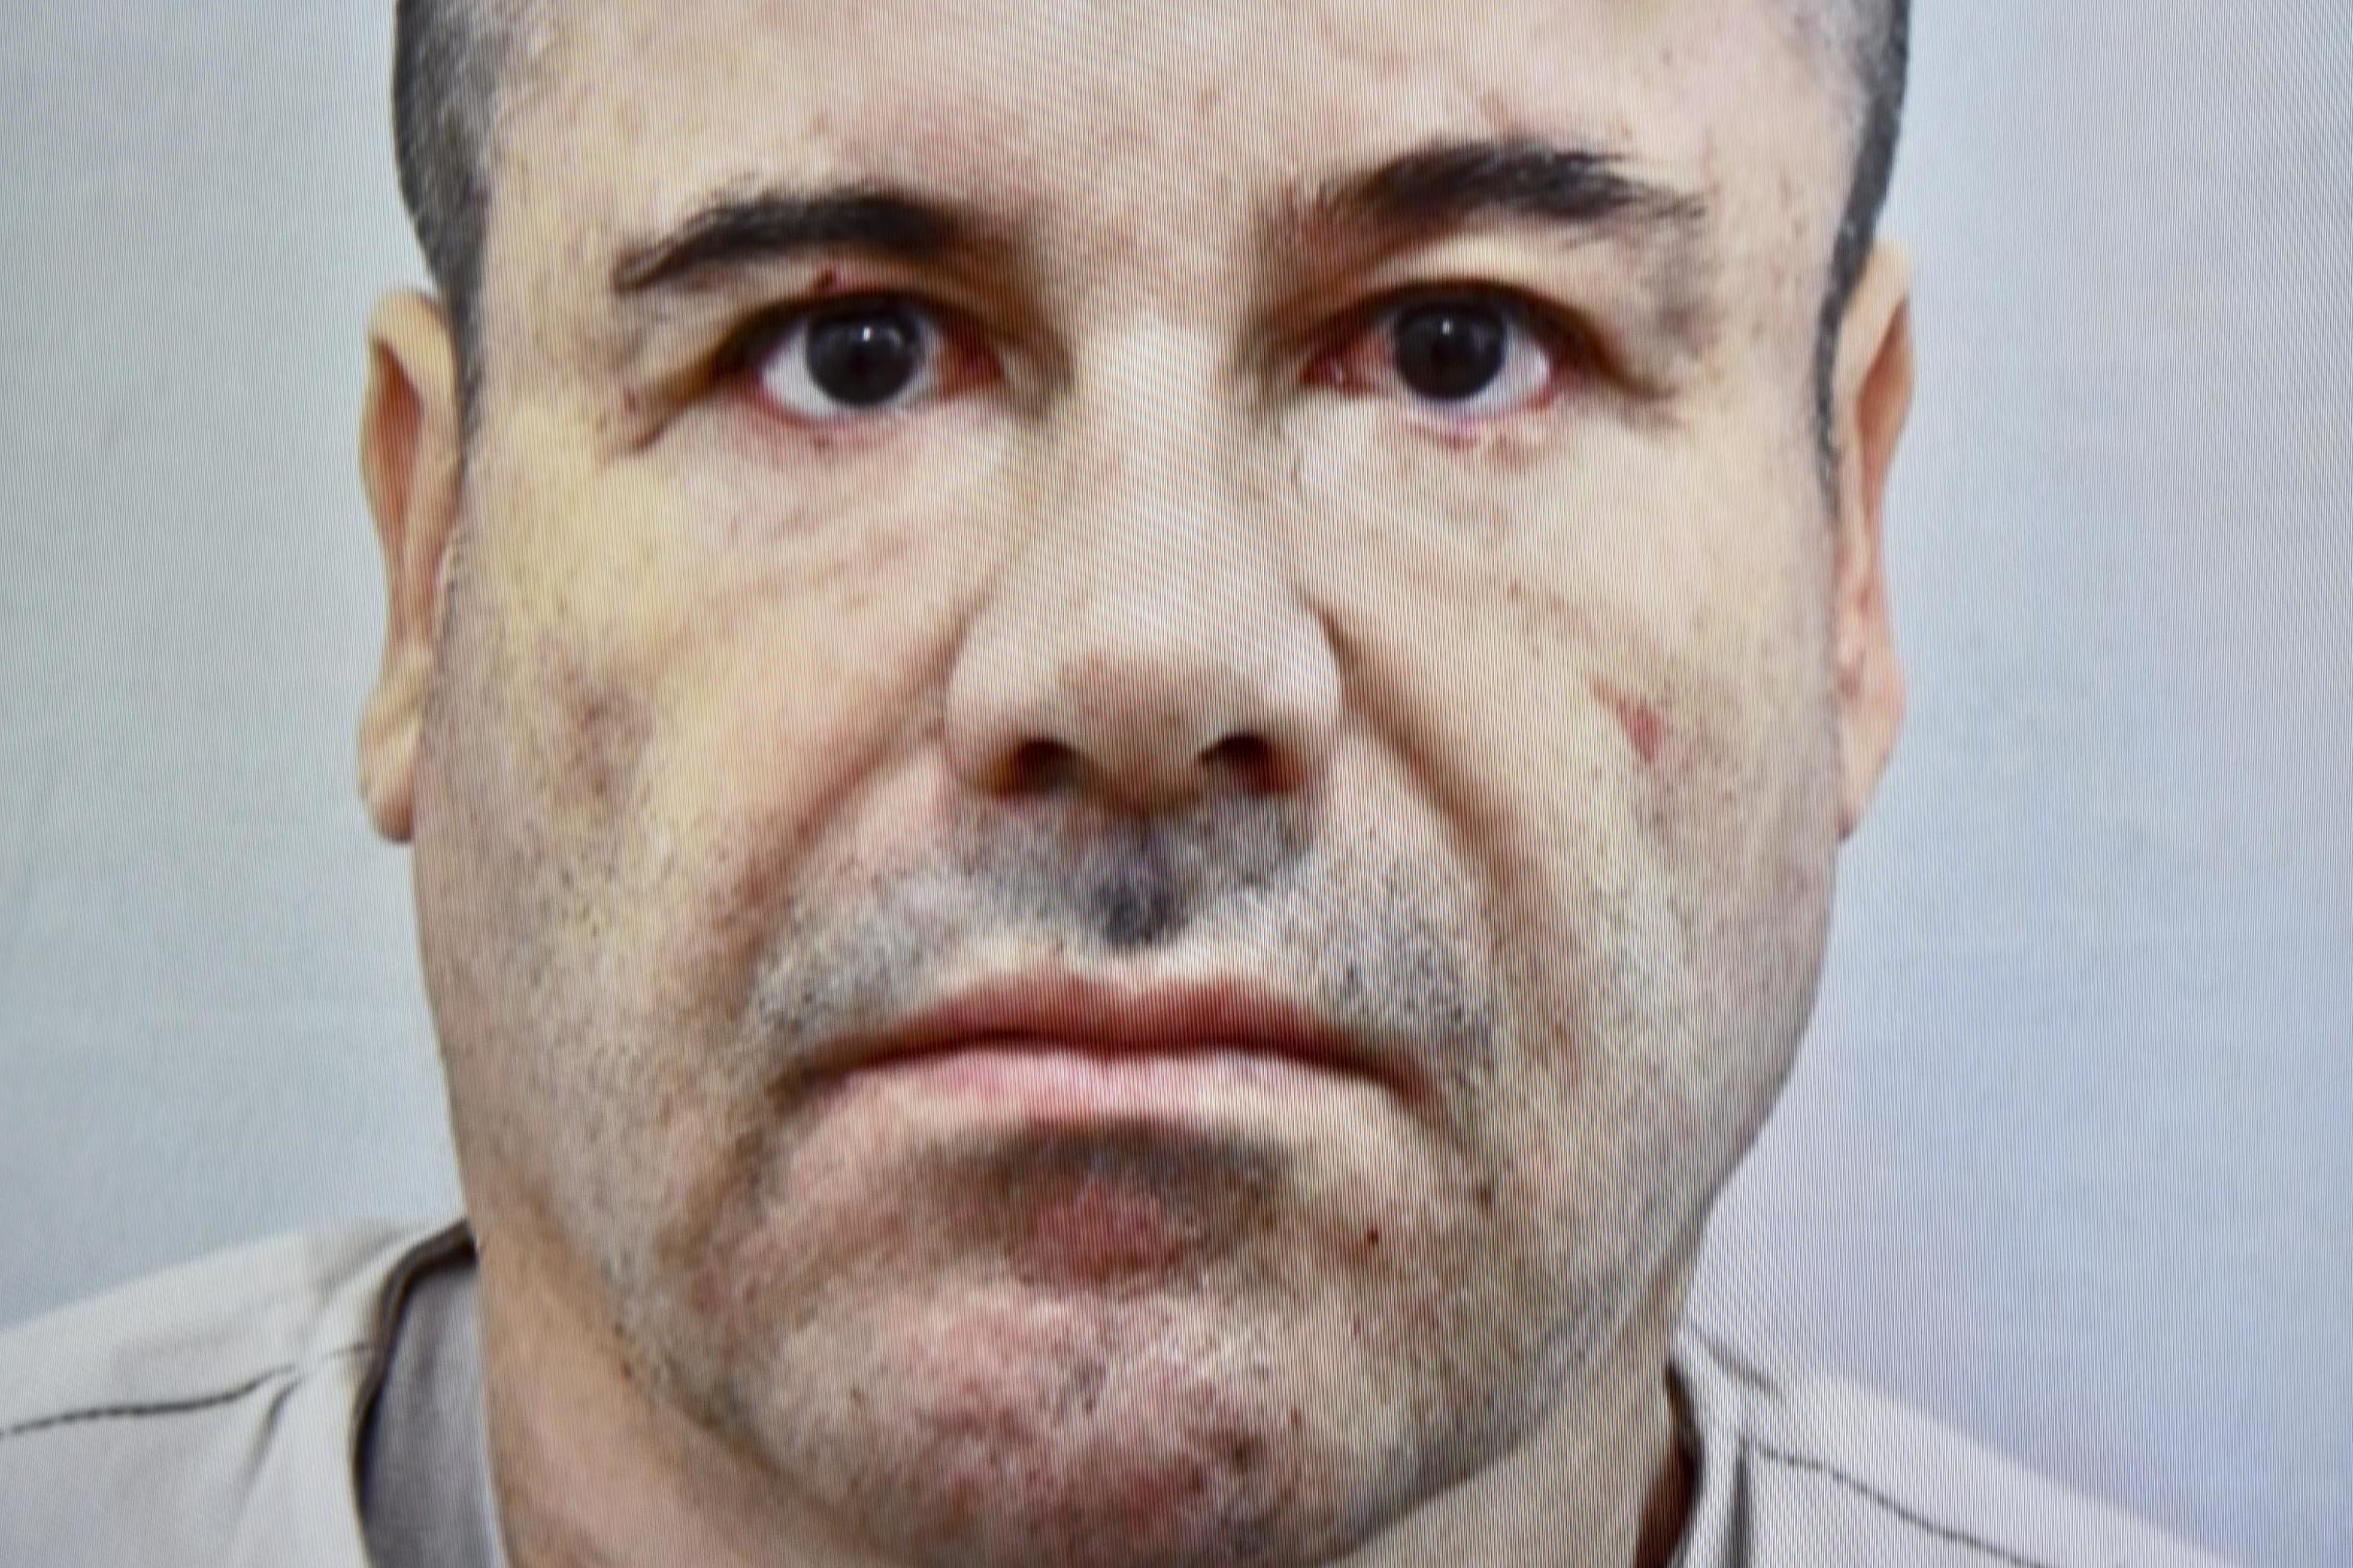 El Chapo lawyer dismisses fears over prison escape: 'Mr Guzman has no special vision'